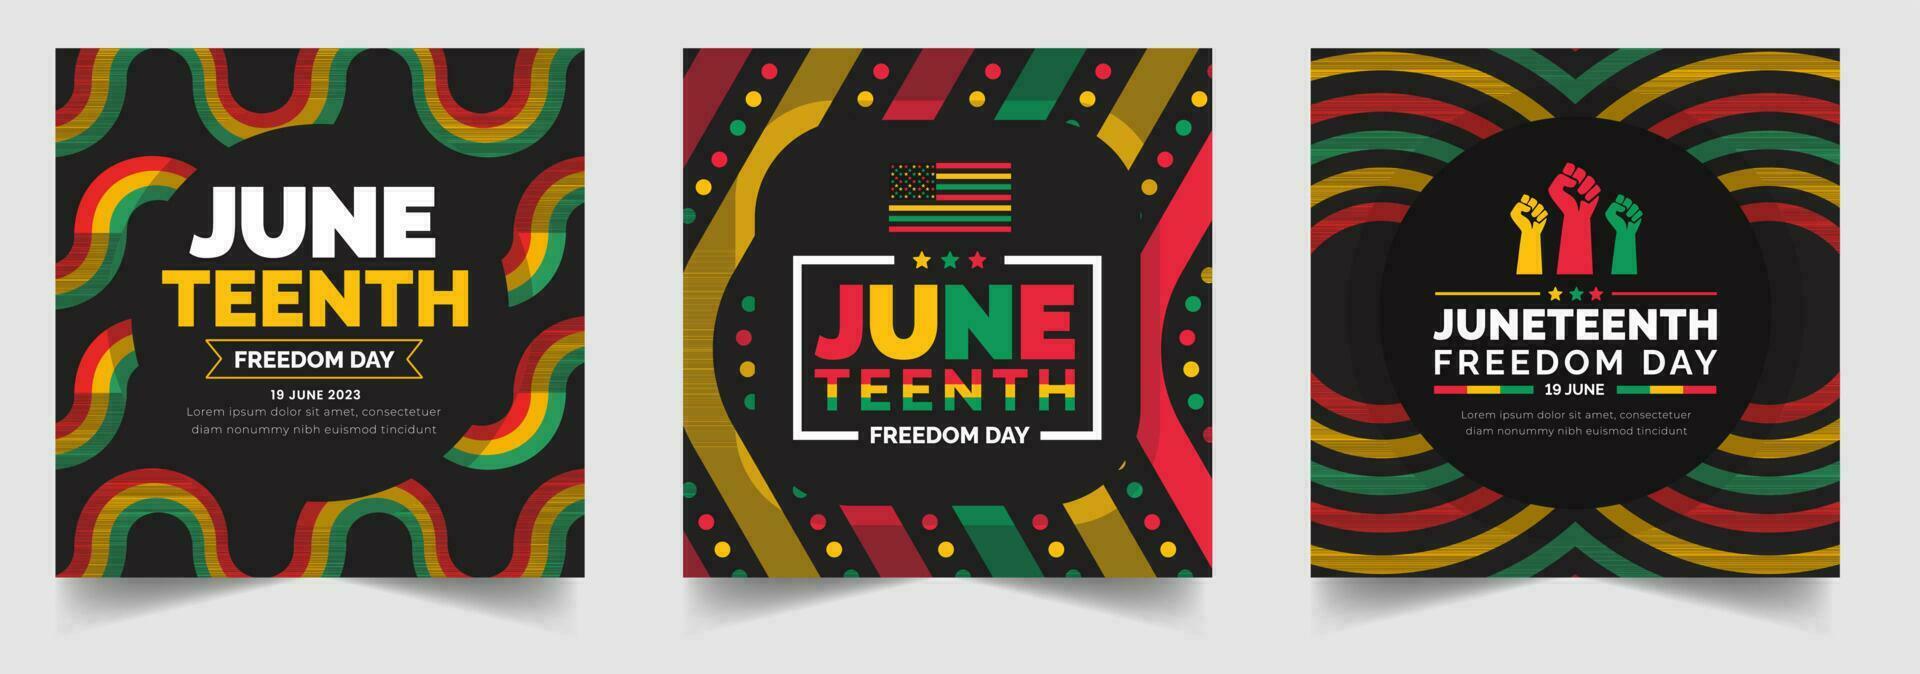 diecinueve de junio libertad día social medios de comunicación enviar bandera, fondo, bandera, tarjeta, póster con tipografía diseño. africano americano independencia día fondo, día de libertad y emancipación. 19 junio. vector